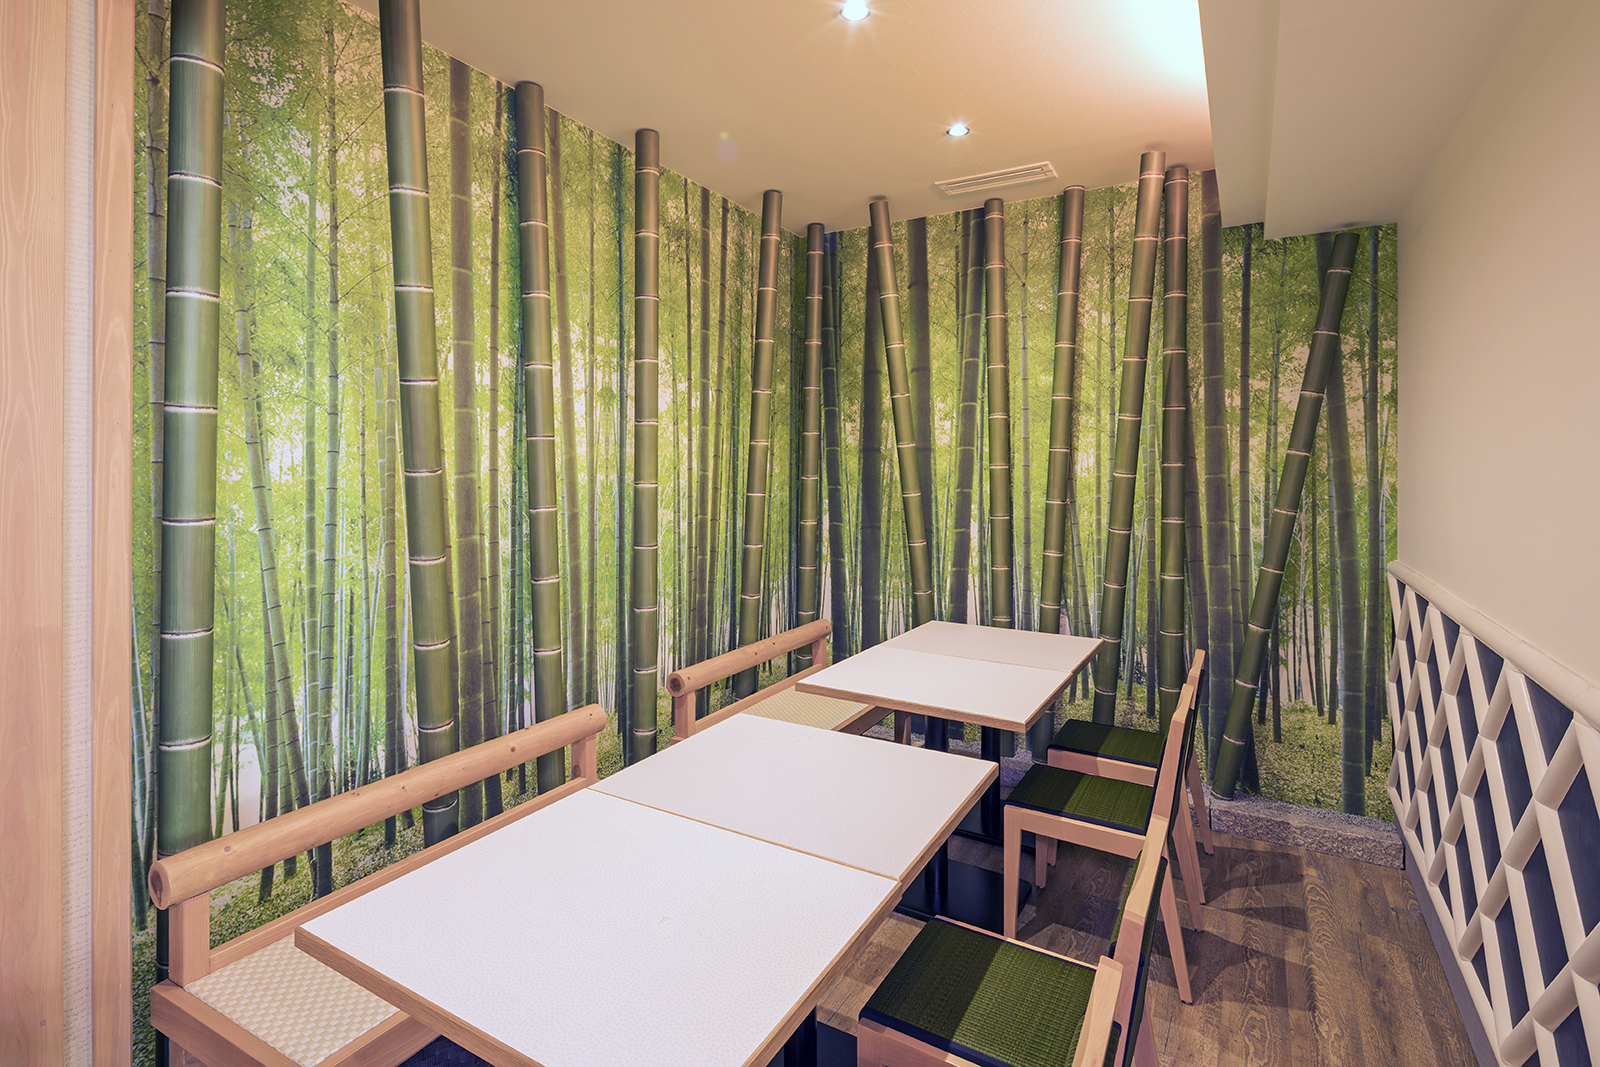 壁面の装飾用にアル銘竹で竹林の演出を | タカショー施工事例紹介